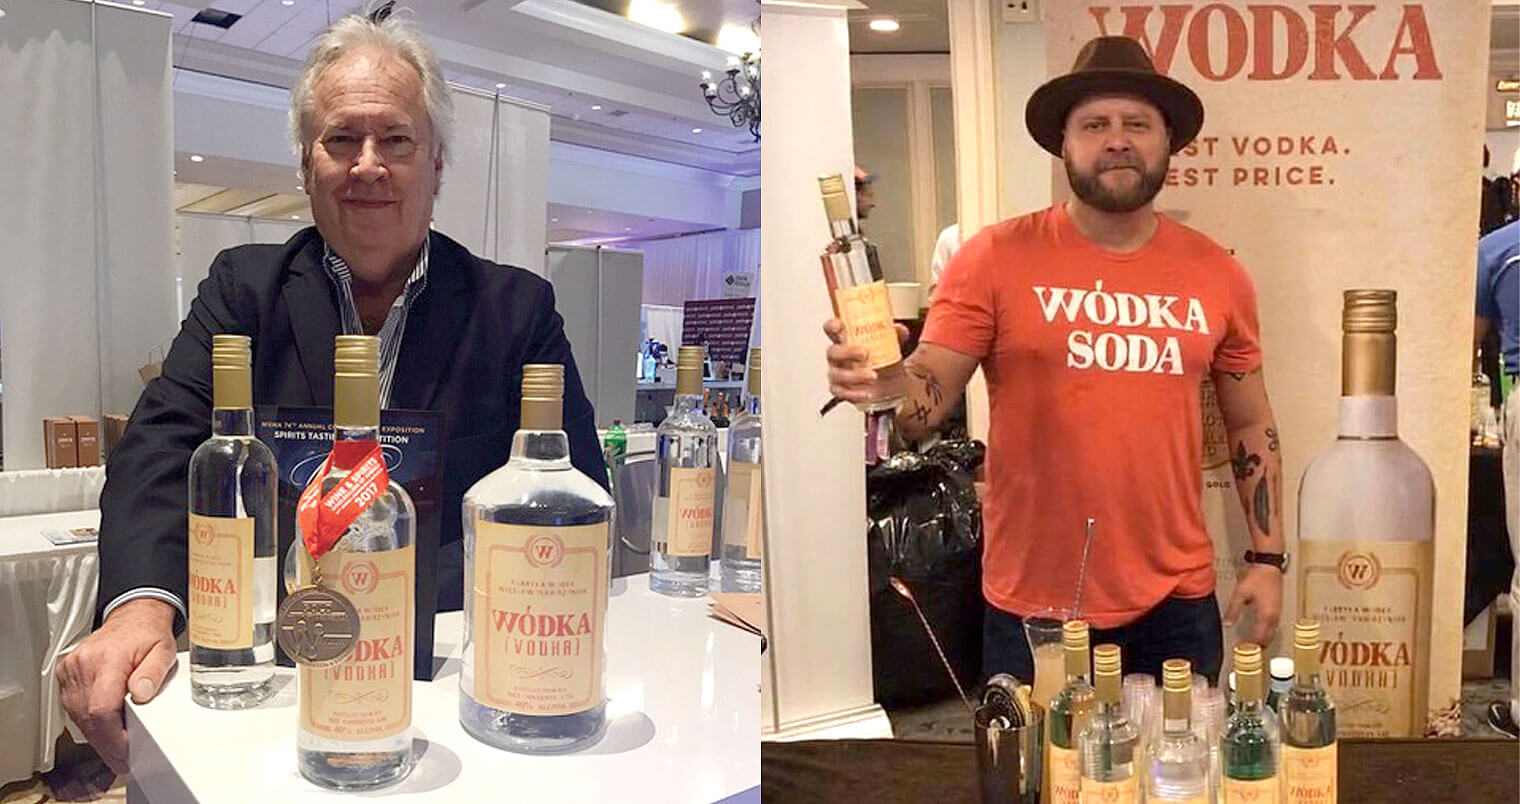 Meet Wódka Vodka President, Rich Roberts, and Marketing Director, Daniel Undhammar, featured image